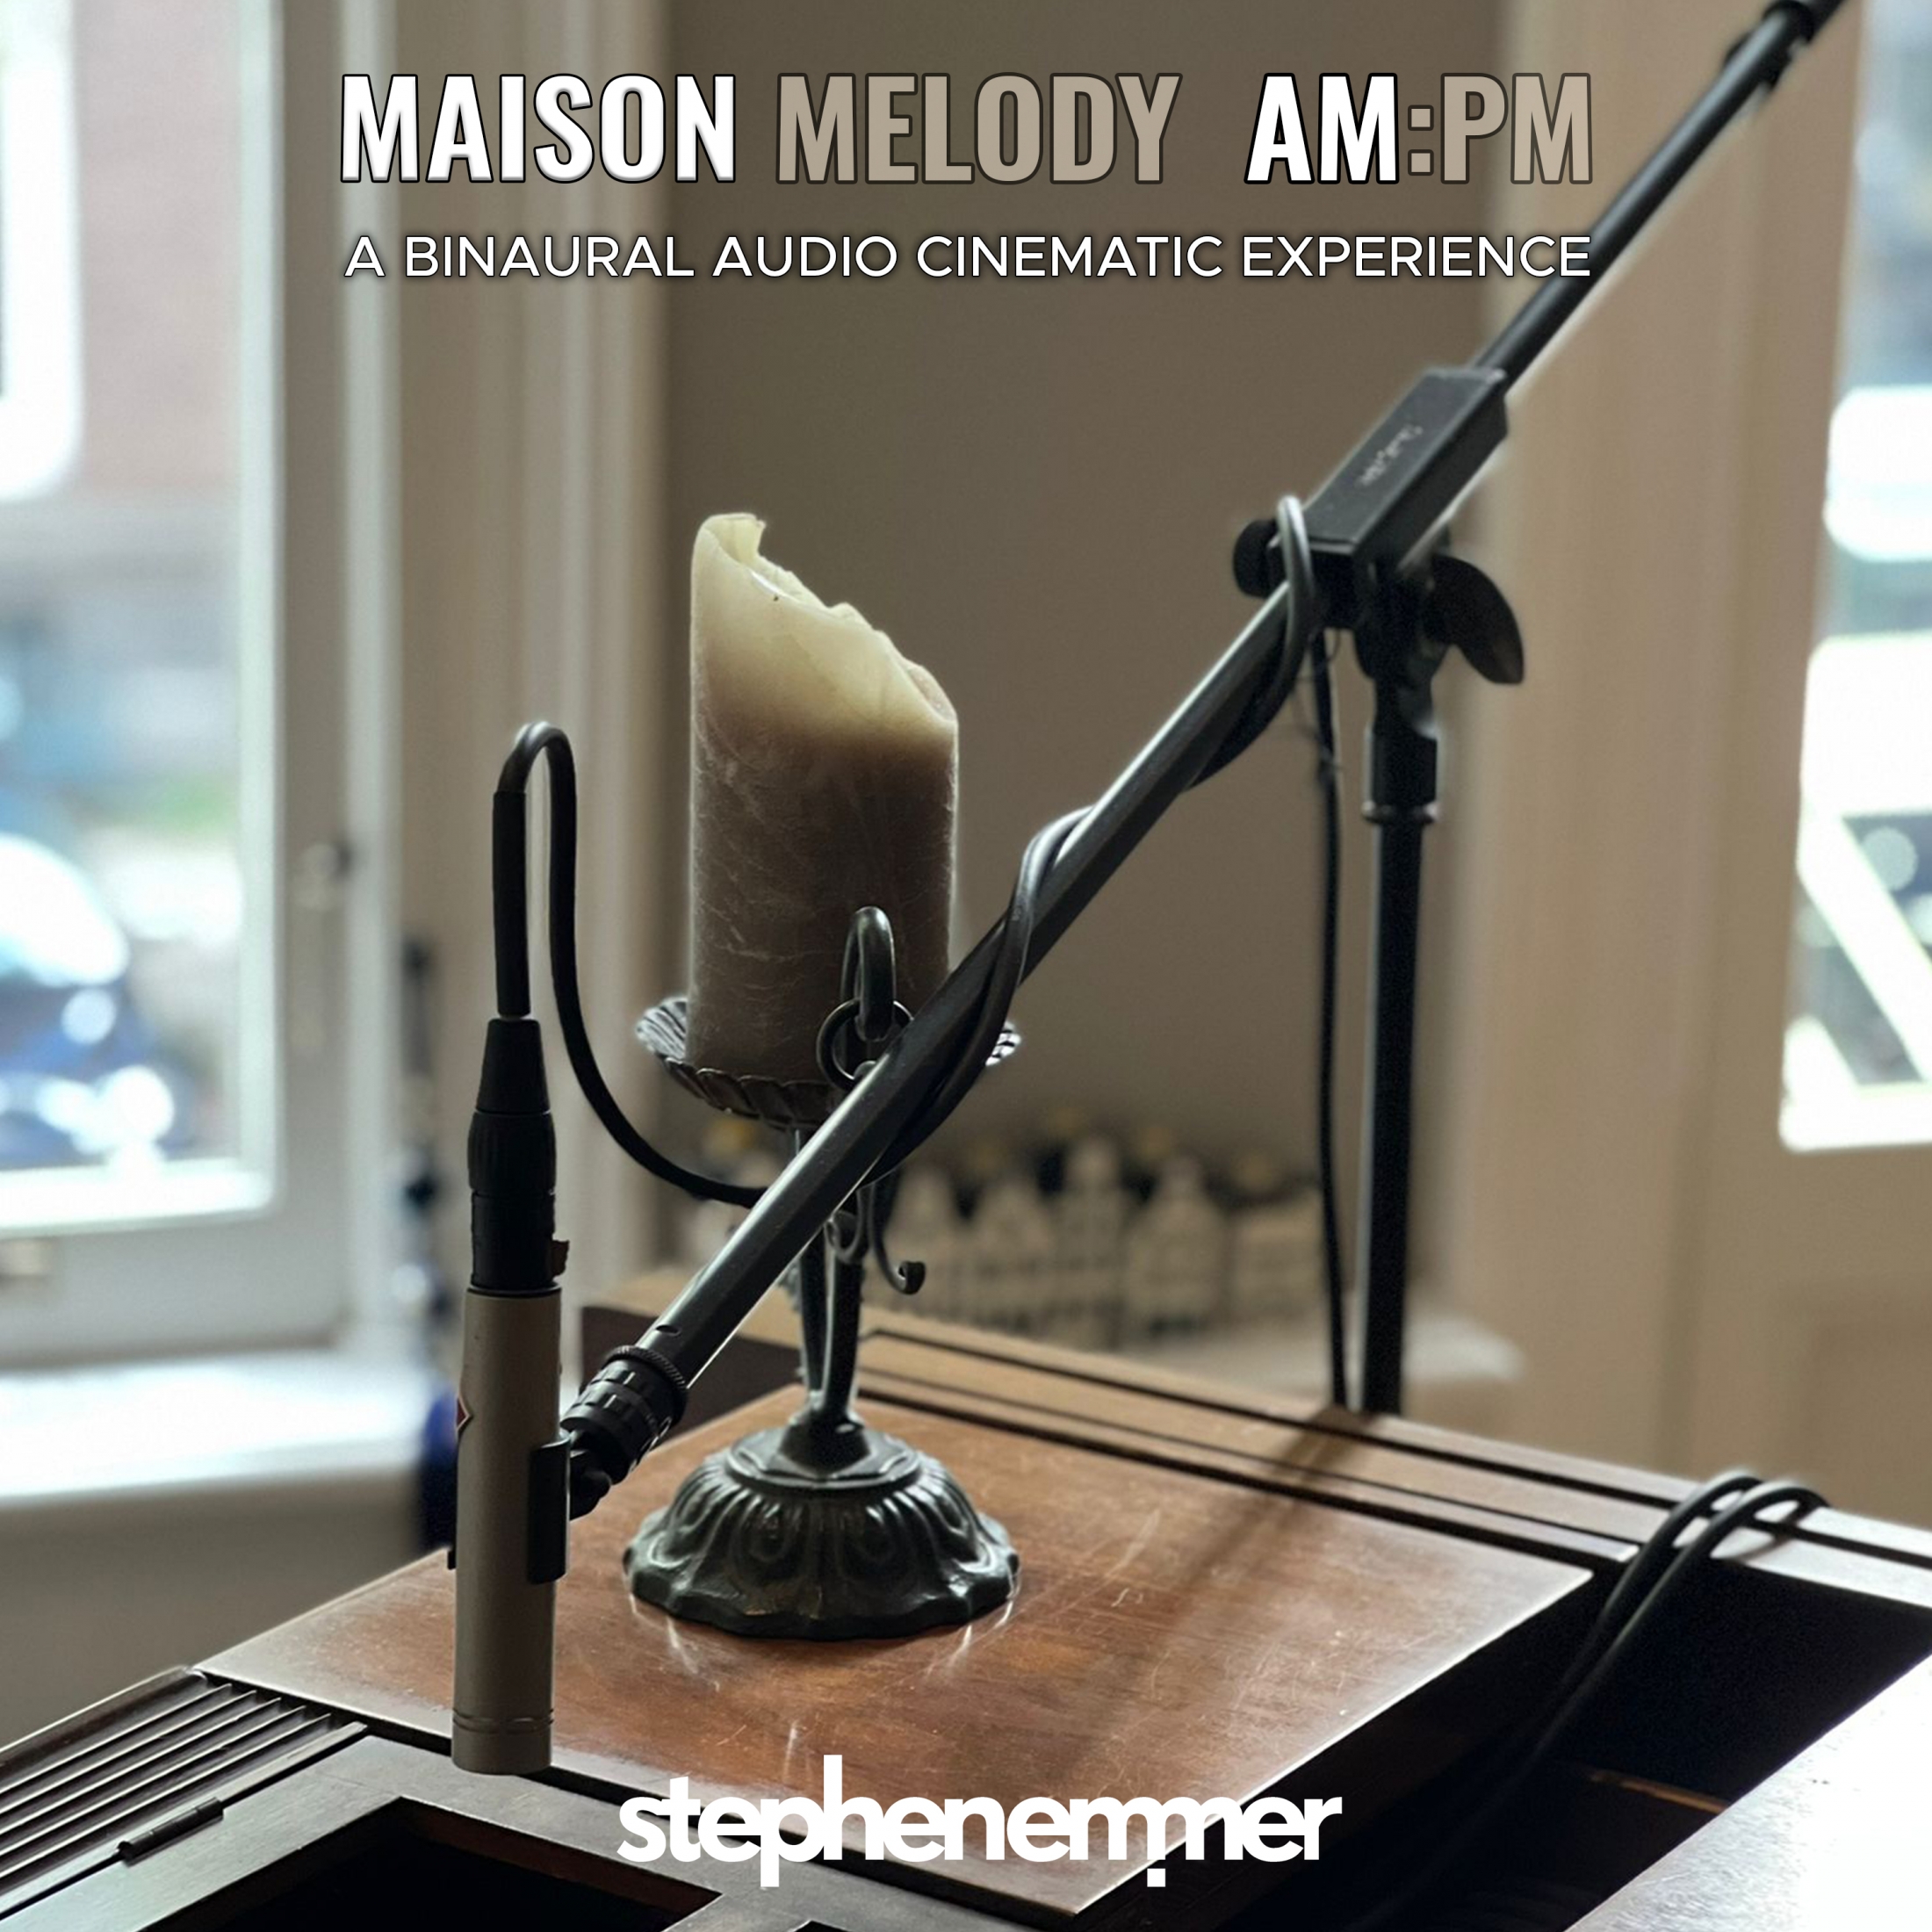 Maison Melody AM:PM